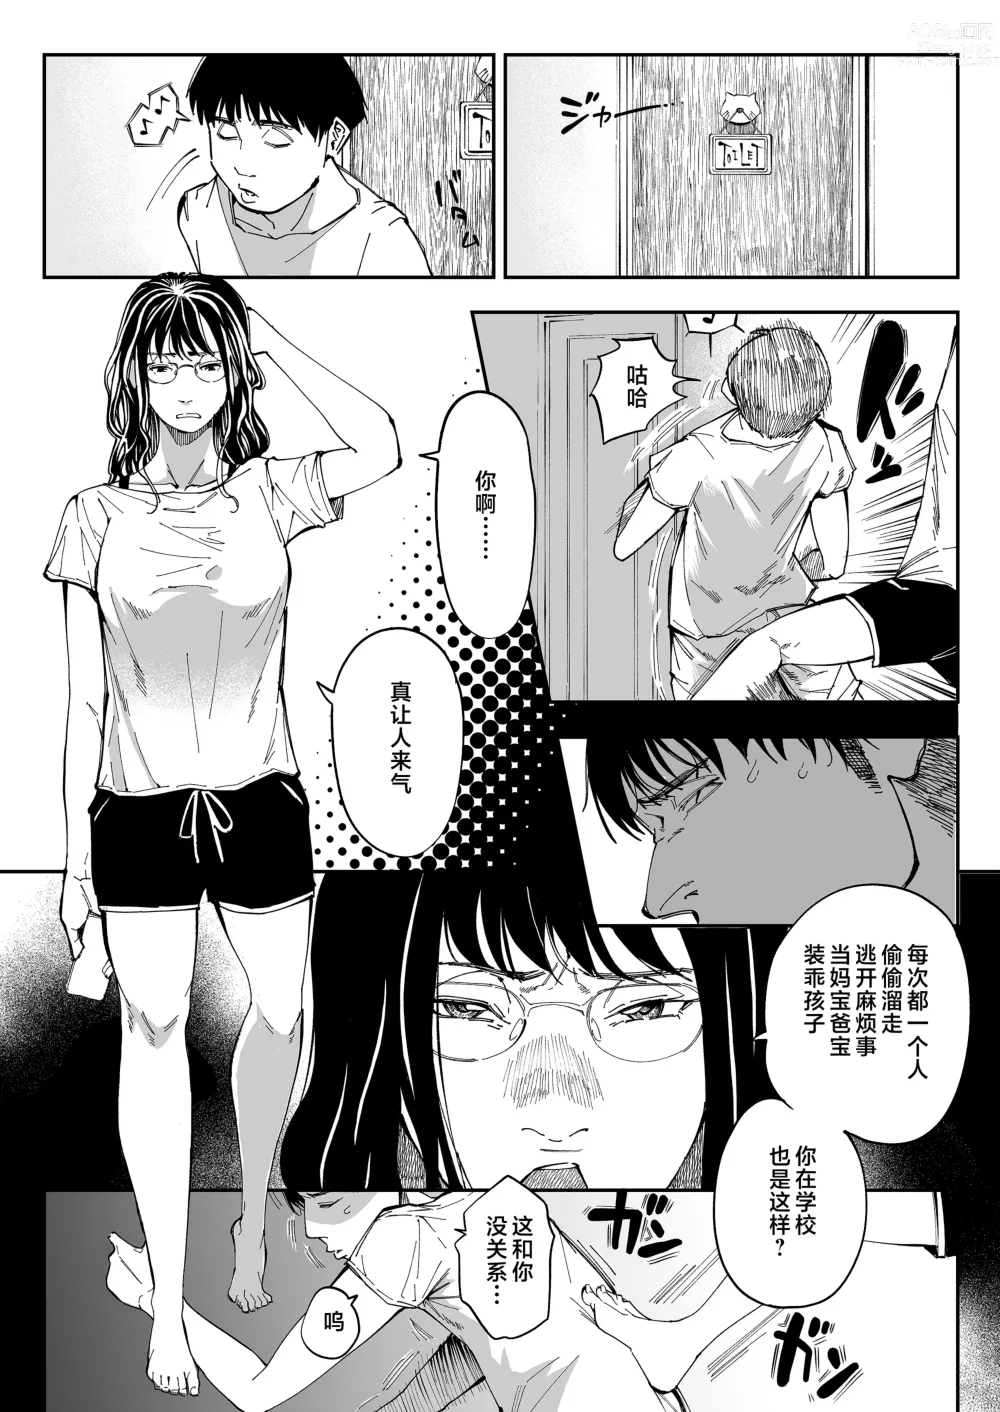 Page 6 of doujinshi 找到了姐姐的福利小号